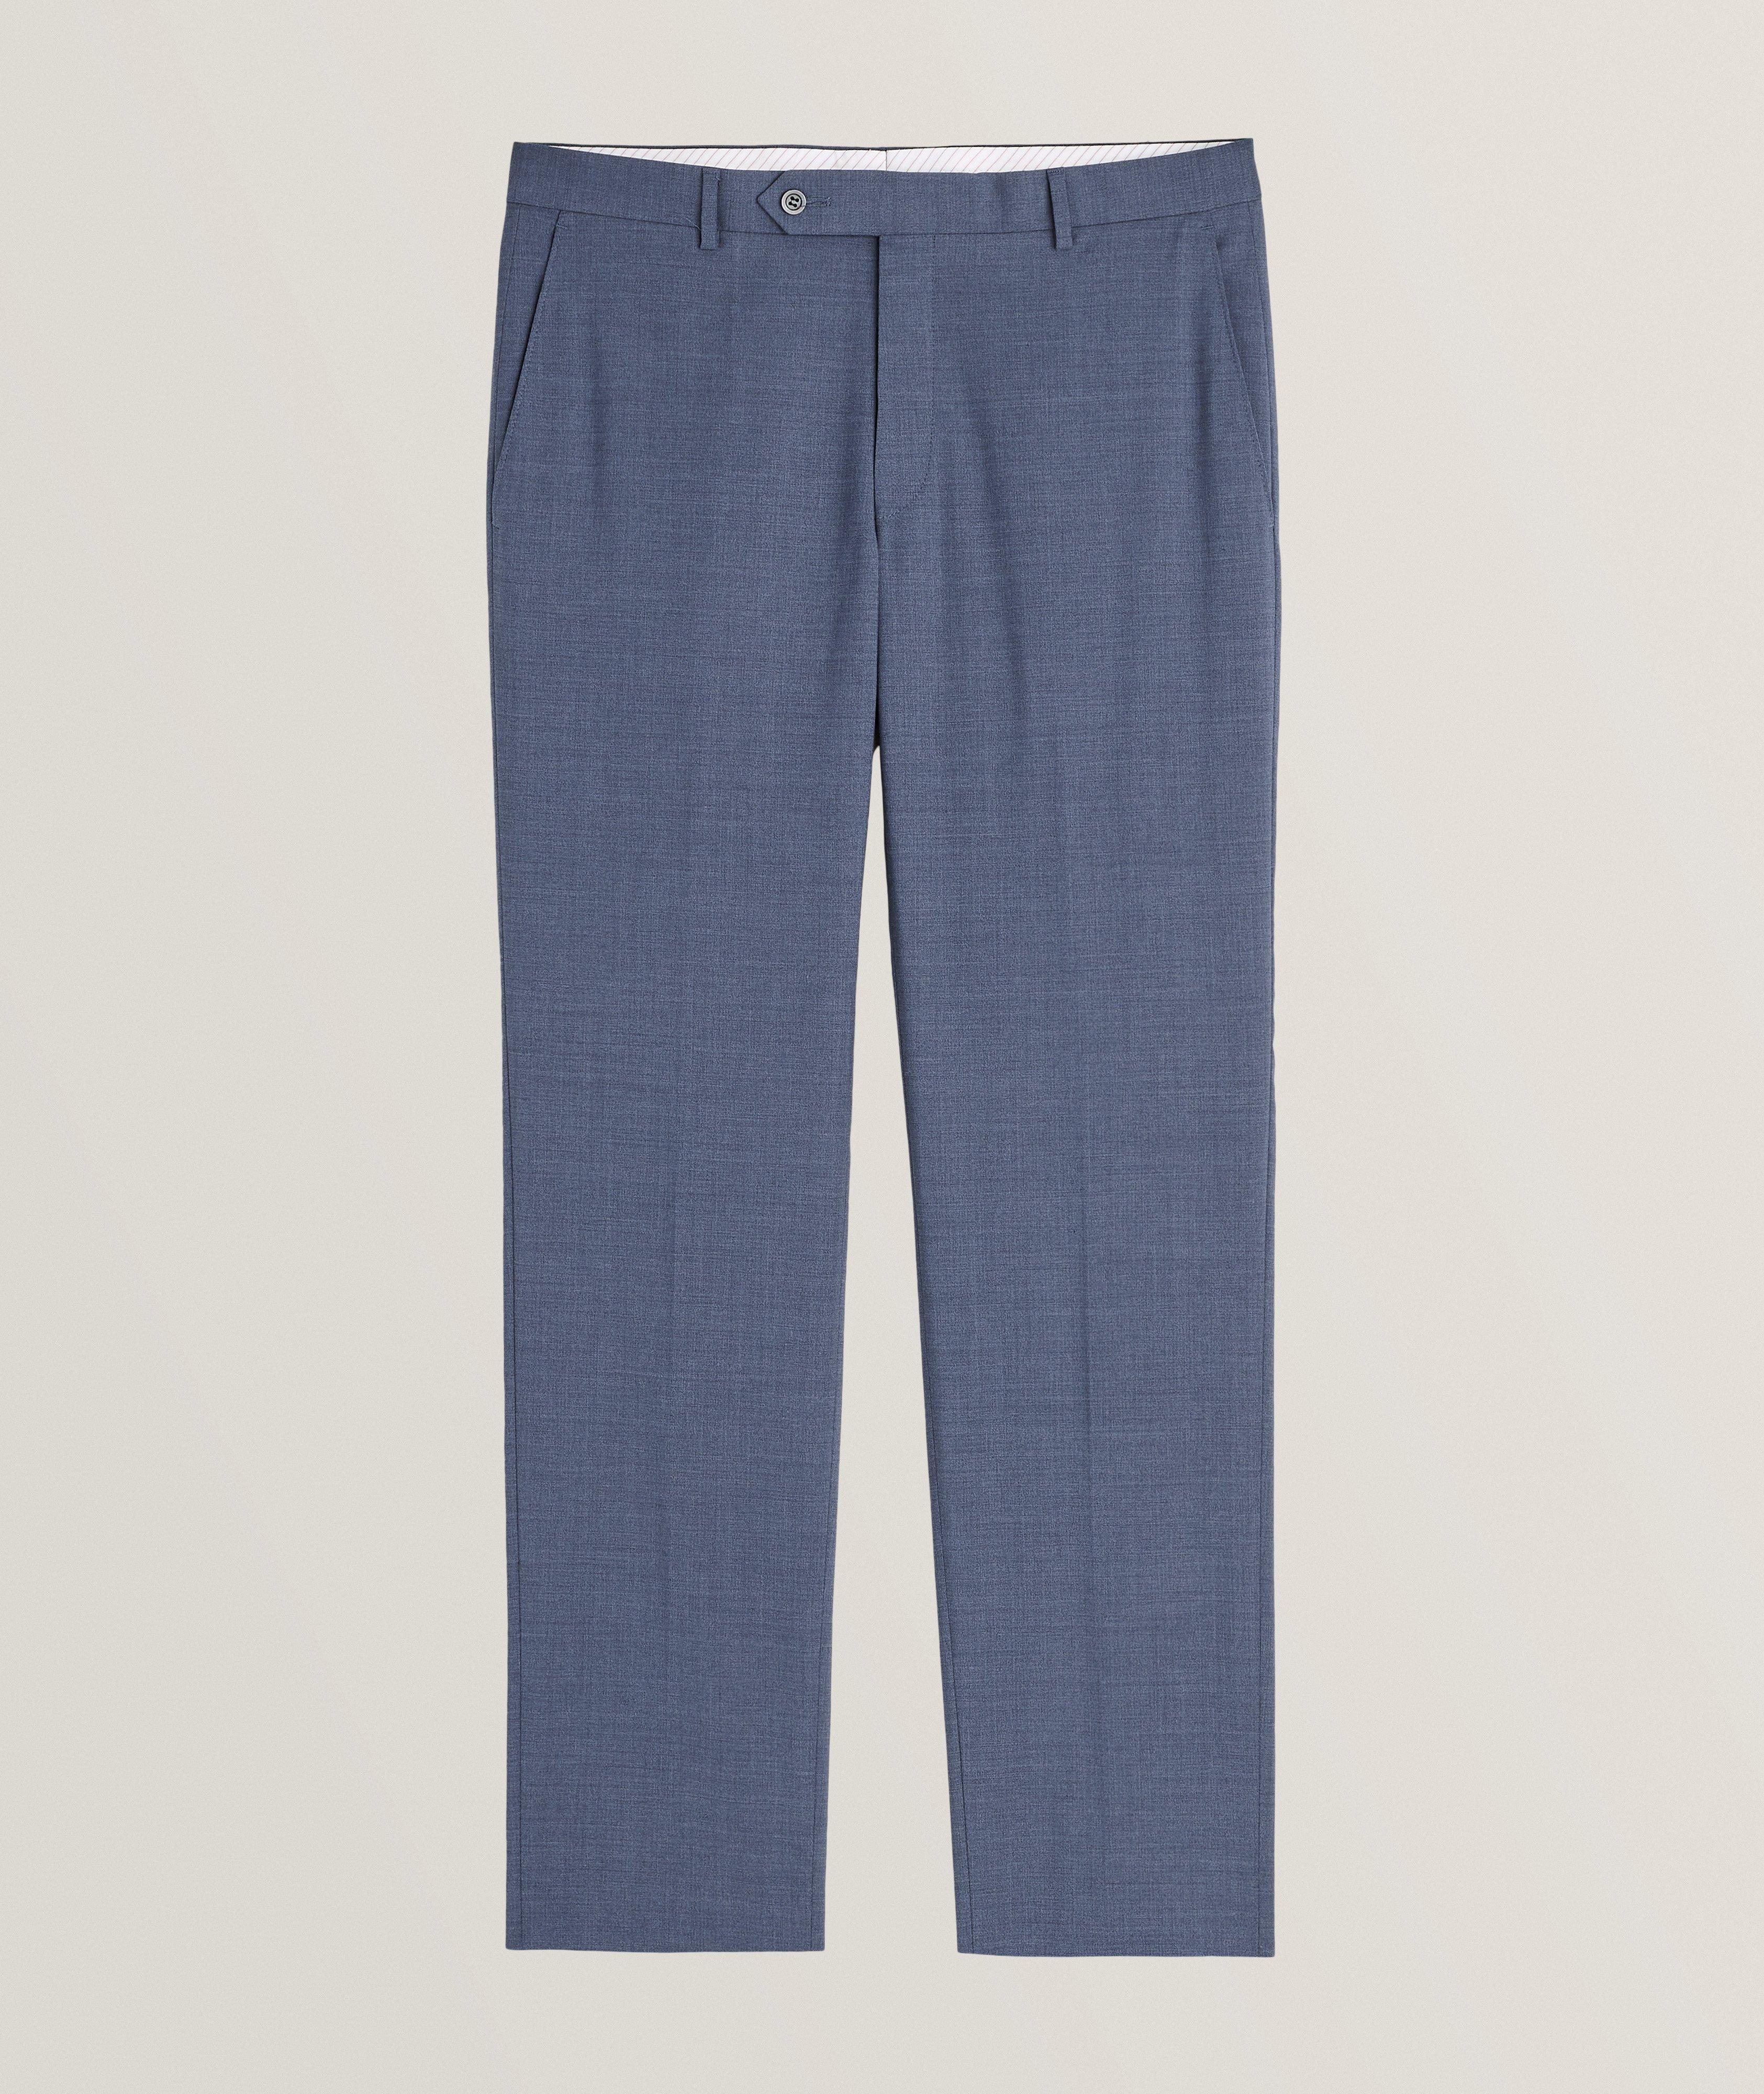 Pantalon habillé en laine Super 110, collection tropicale image 0